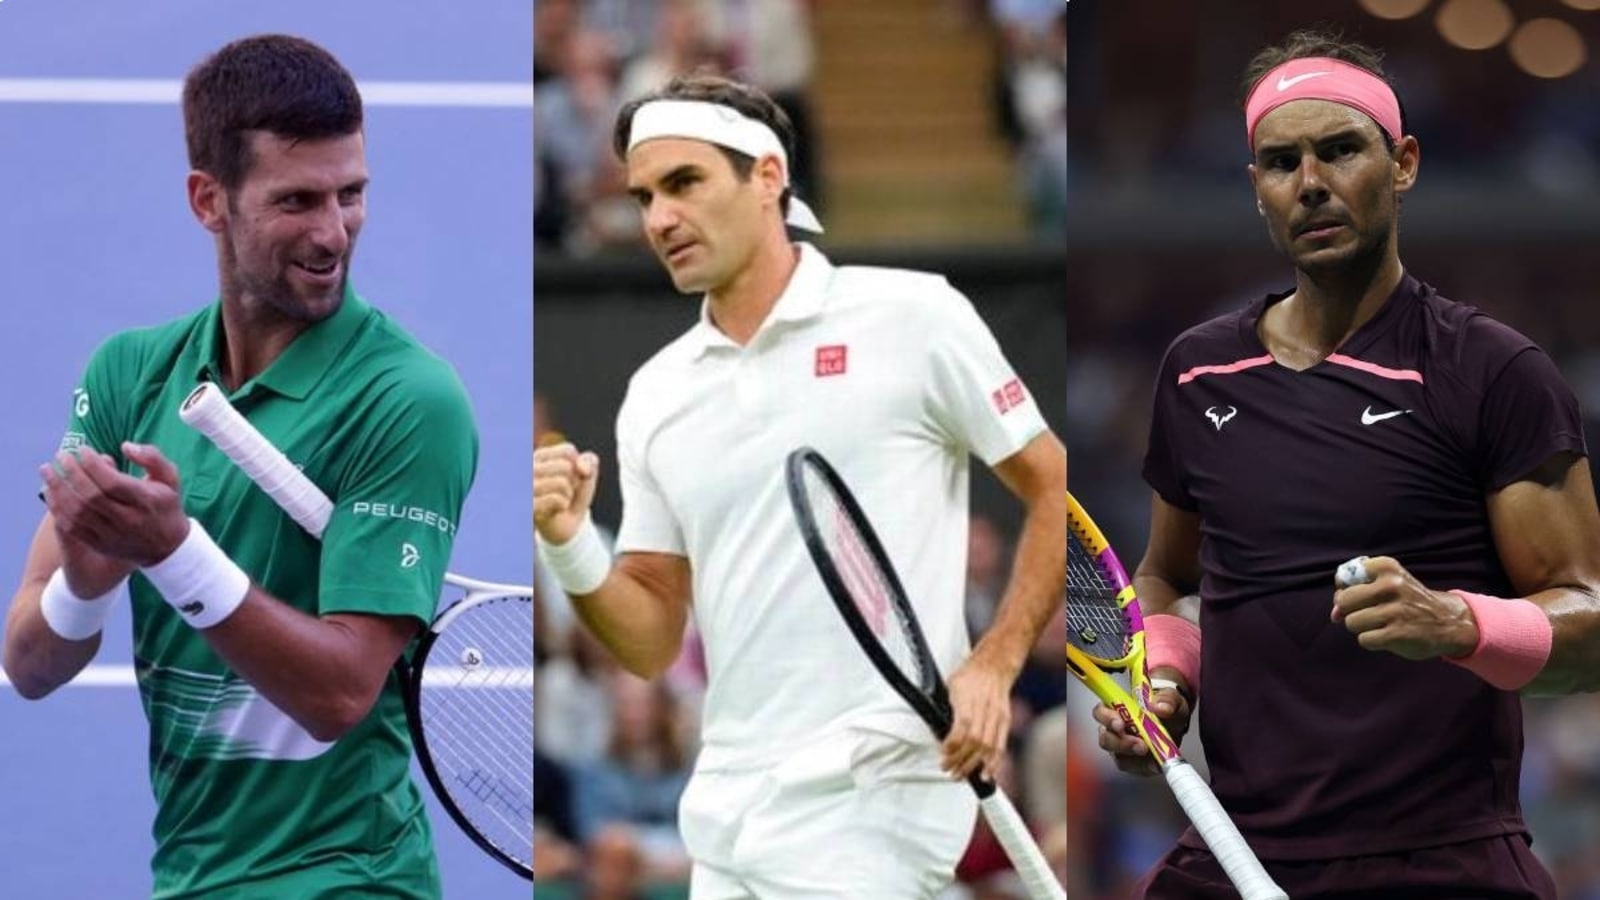 Federer zanechá větší stopu než Djokovič.  Ikona větší než Nadal |  tenisové novinky